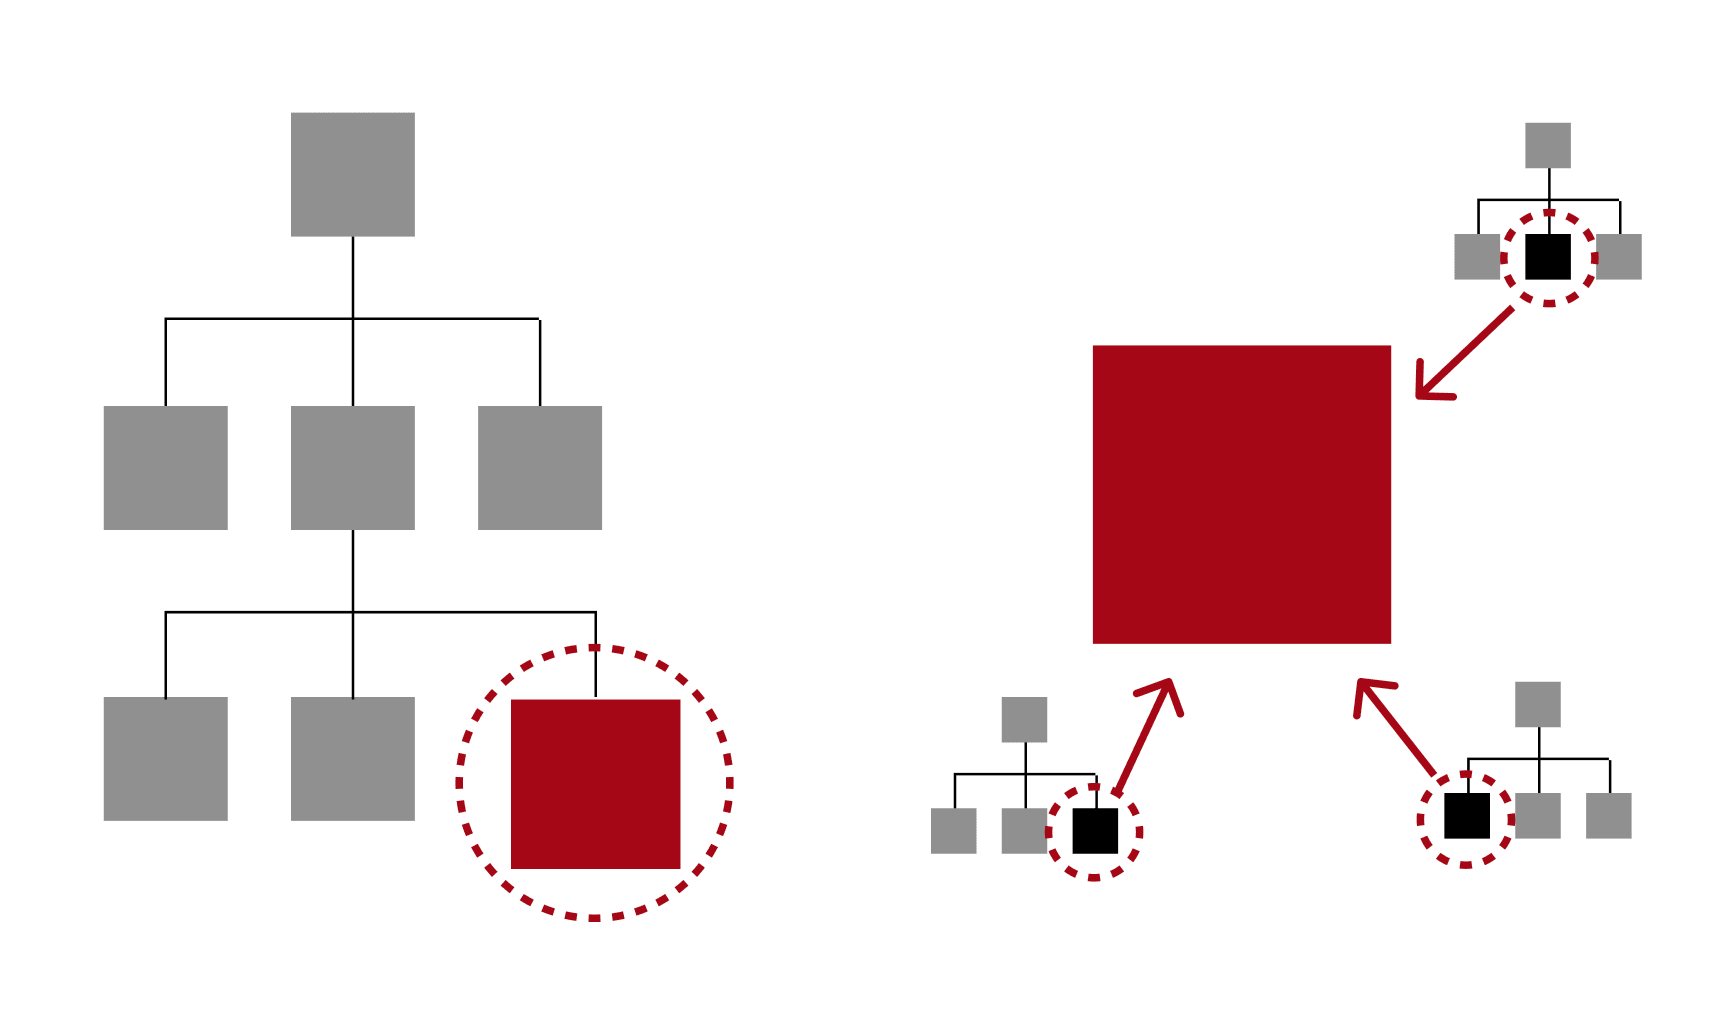 トップダウン方式の分類およびファセット分類の概念図